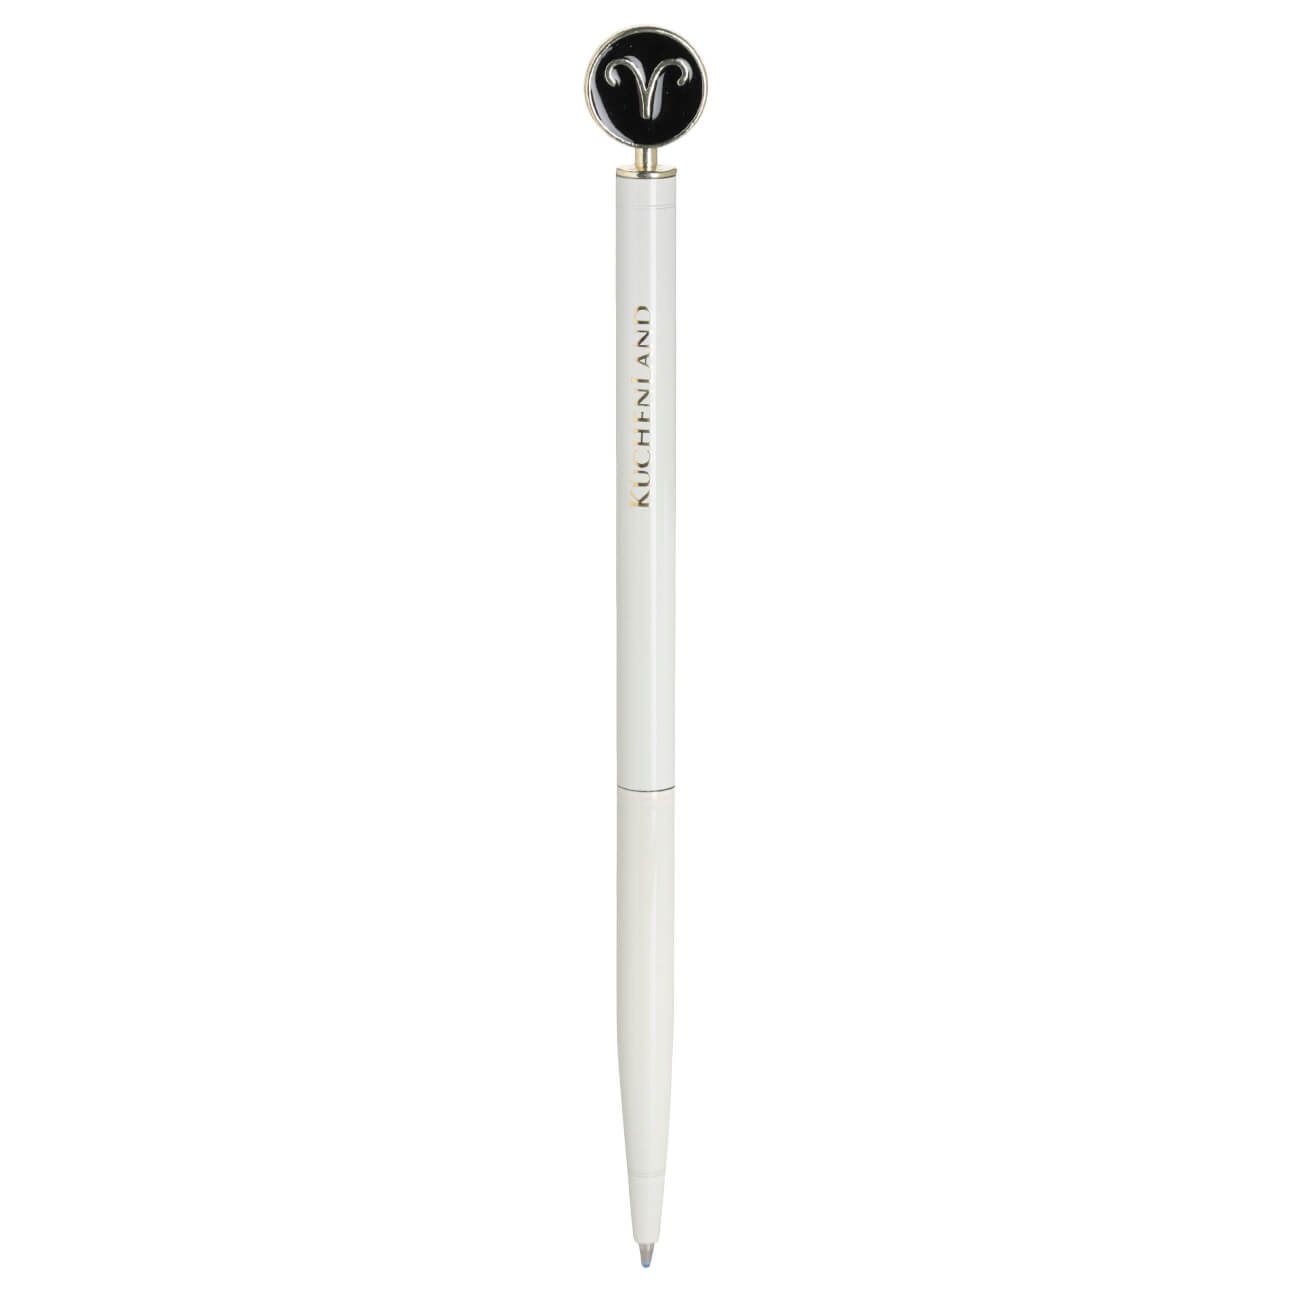 Ручка шариковая, 15 см, с фигуркой, сталь, молочно-золотистая, Овен, Zodiac